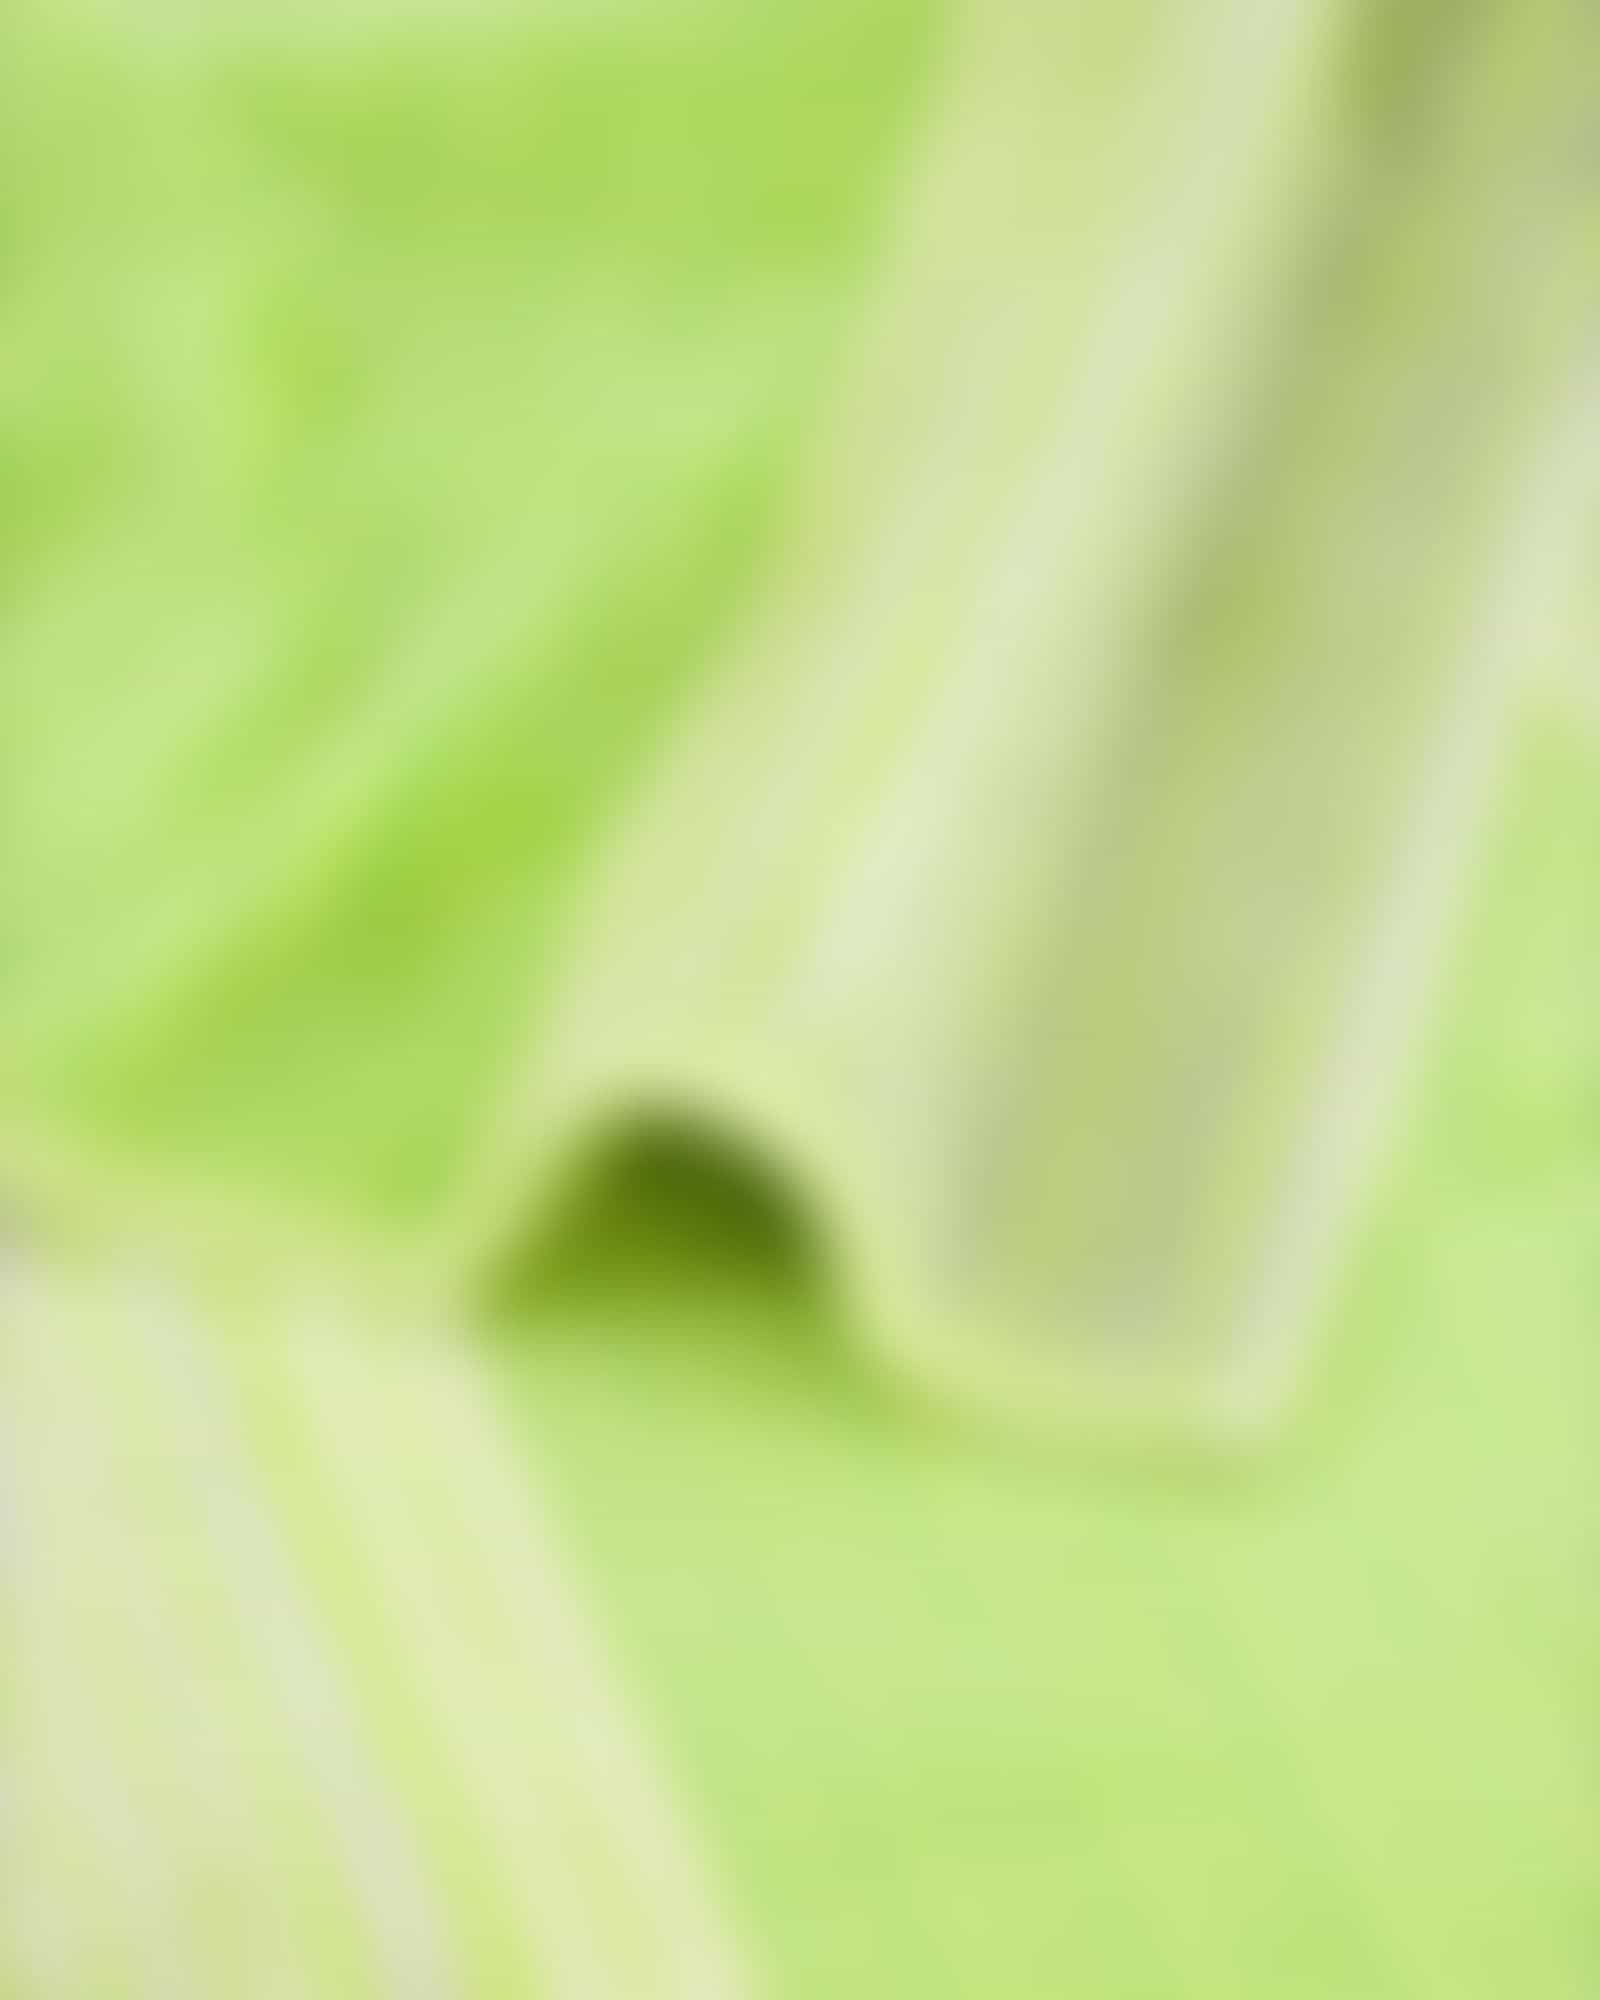 Cawö - Noblesse Cashmere Streifen 1056 - Farbe: kiwi - 45 - Seiflappen 30x30 cm